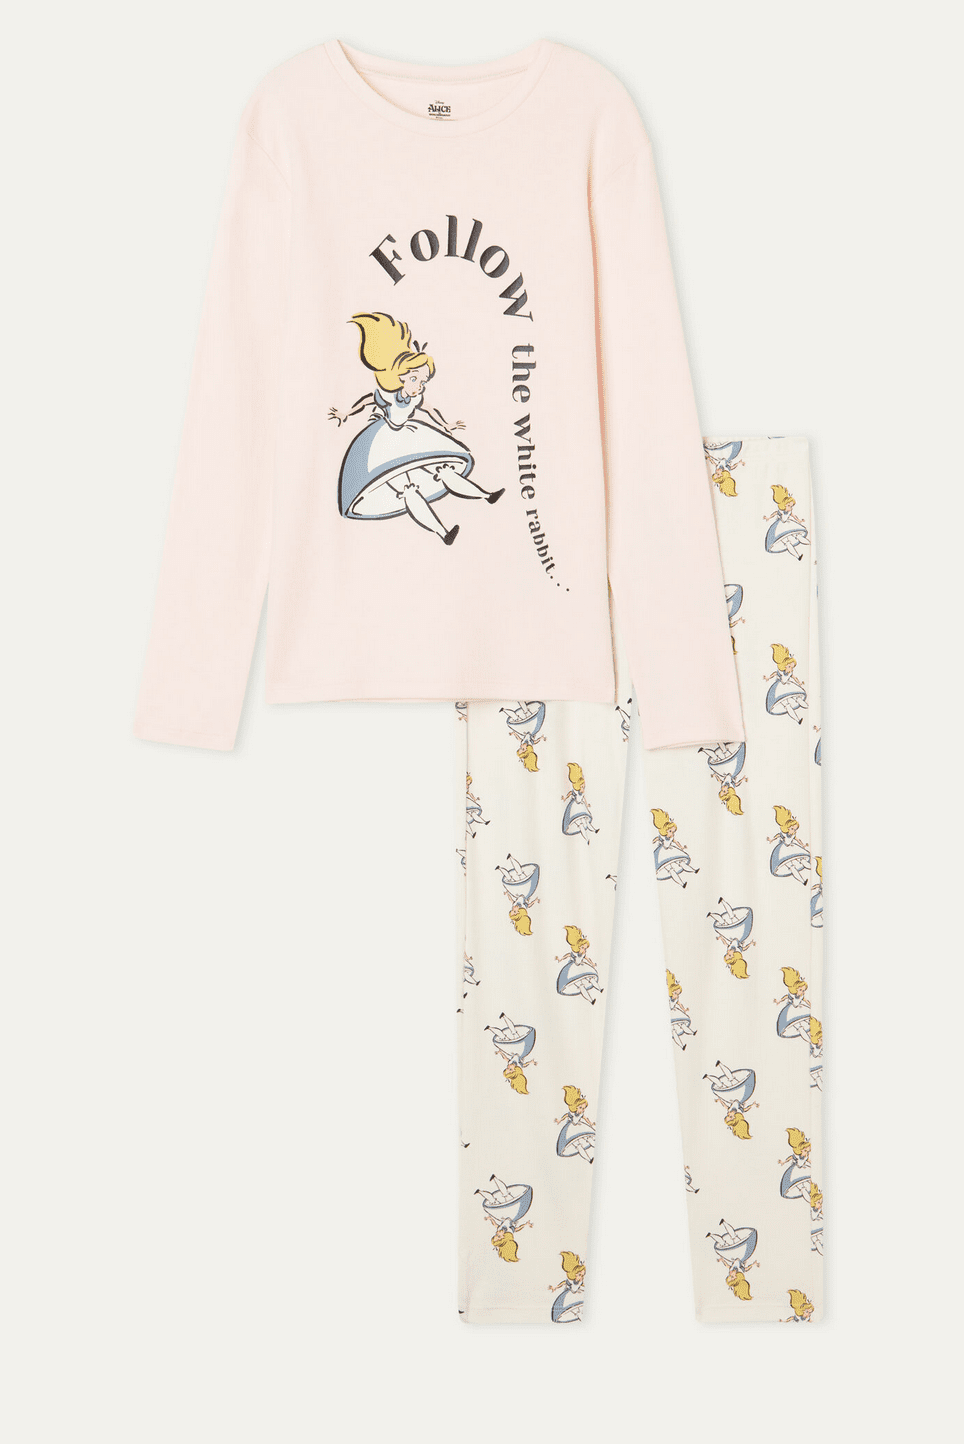 Χειμερινές πιτζάμες για μικρά κορίτσια με αγαπημένους ήρωες της Disney!